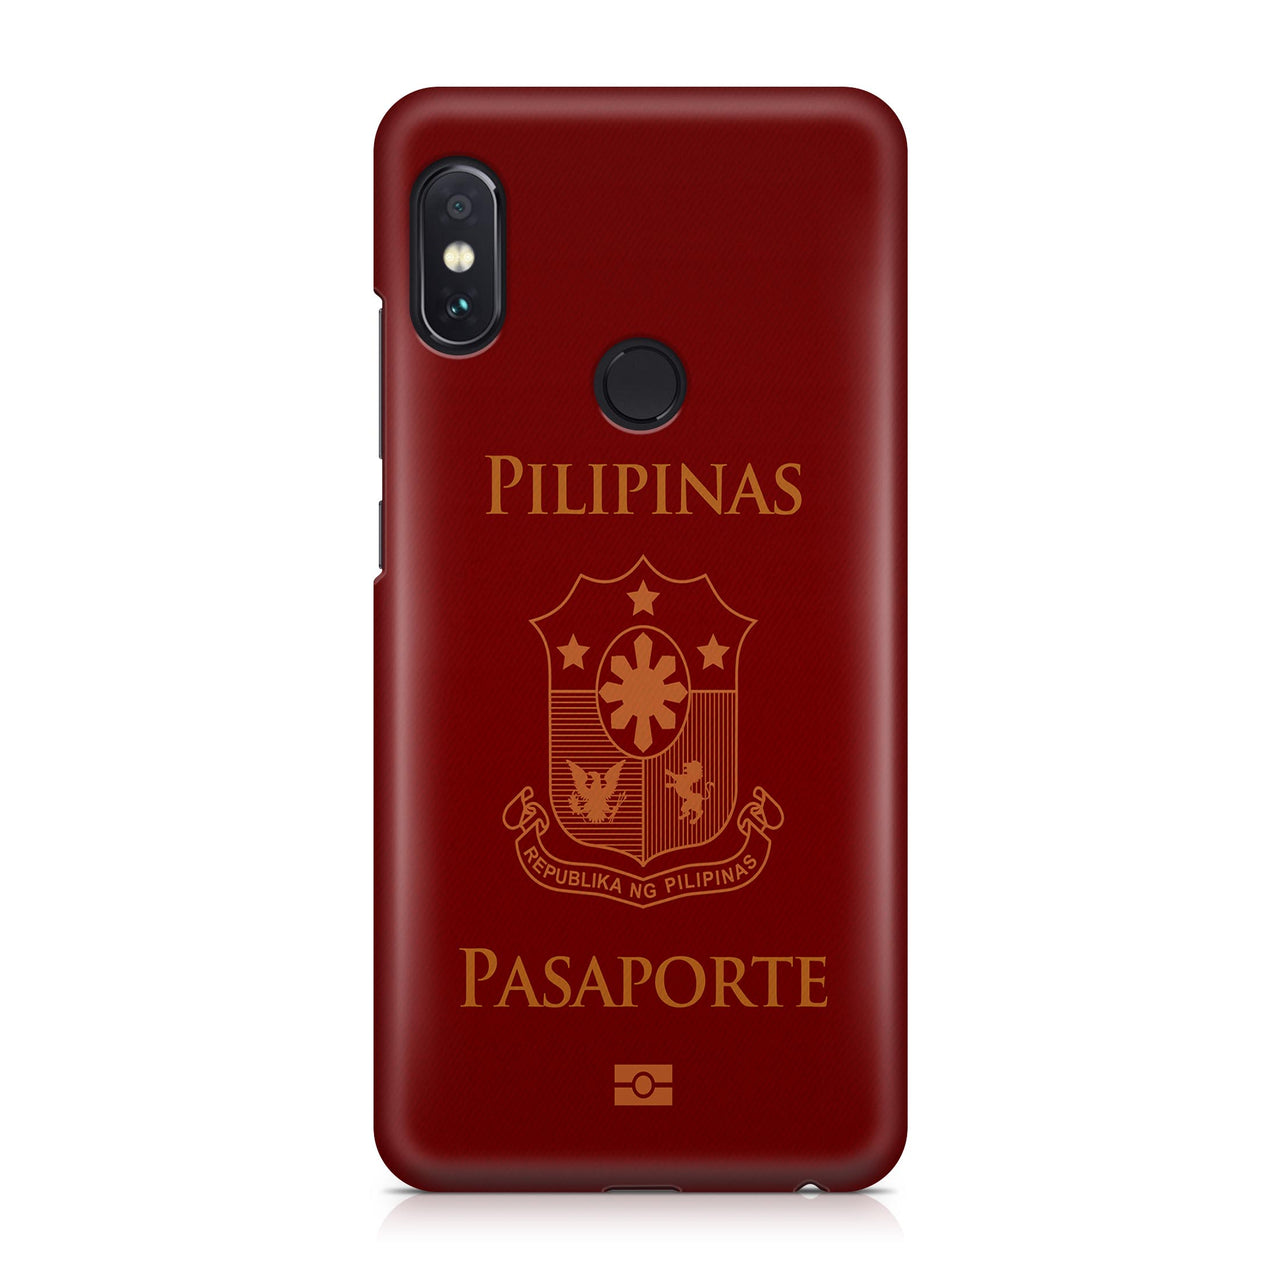 Philippines Passport Designed Xiaomi Cases